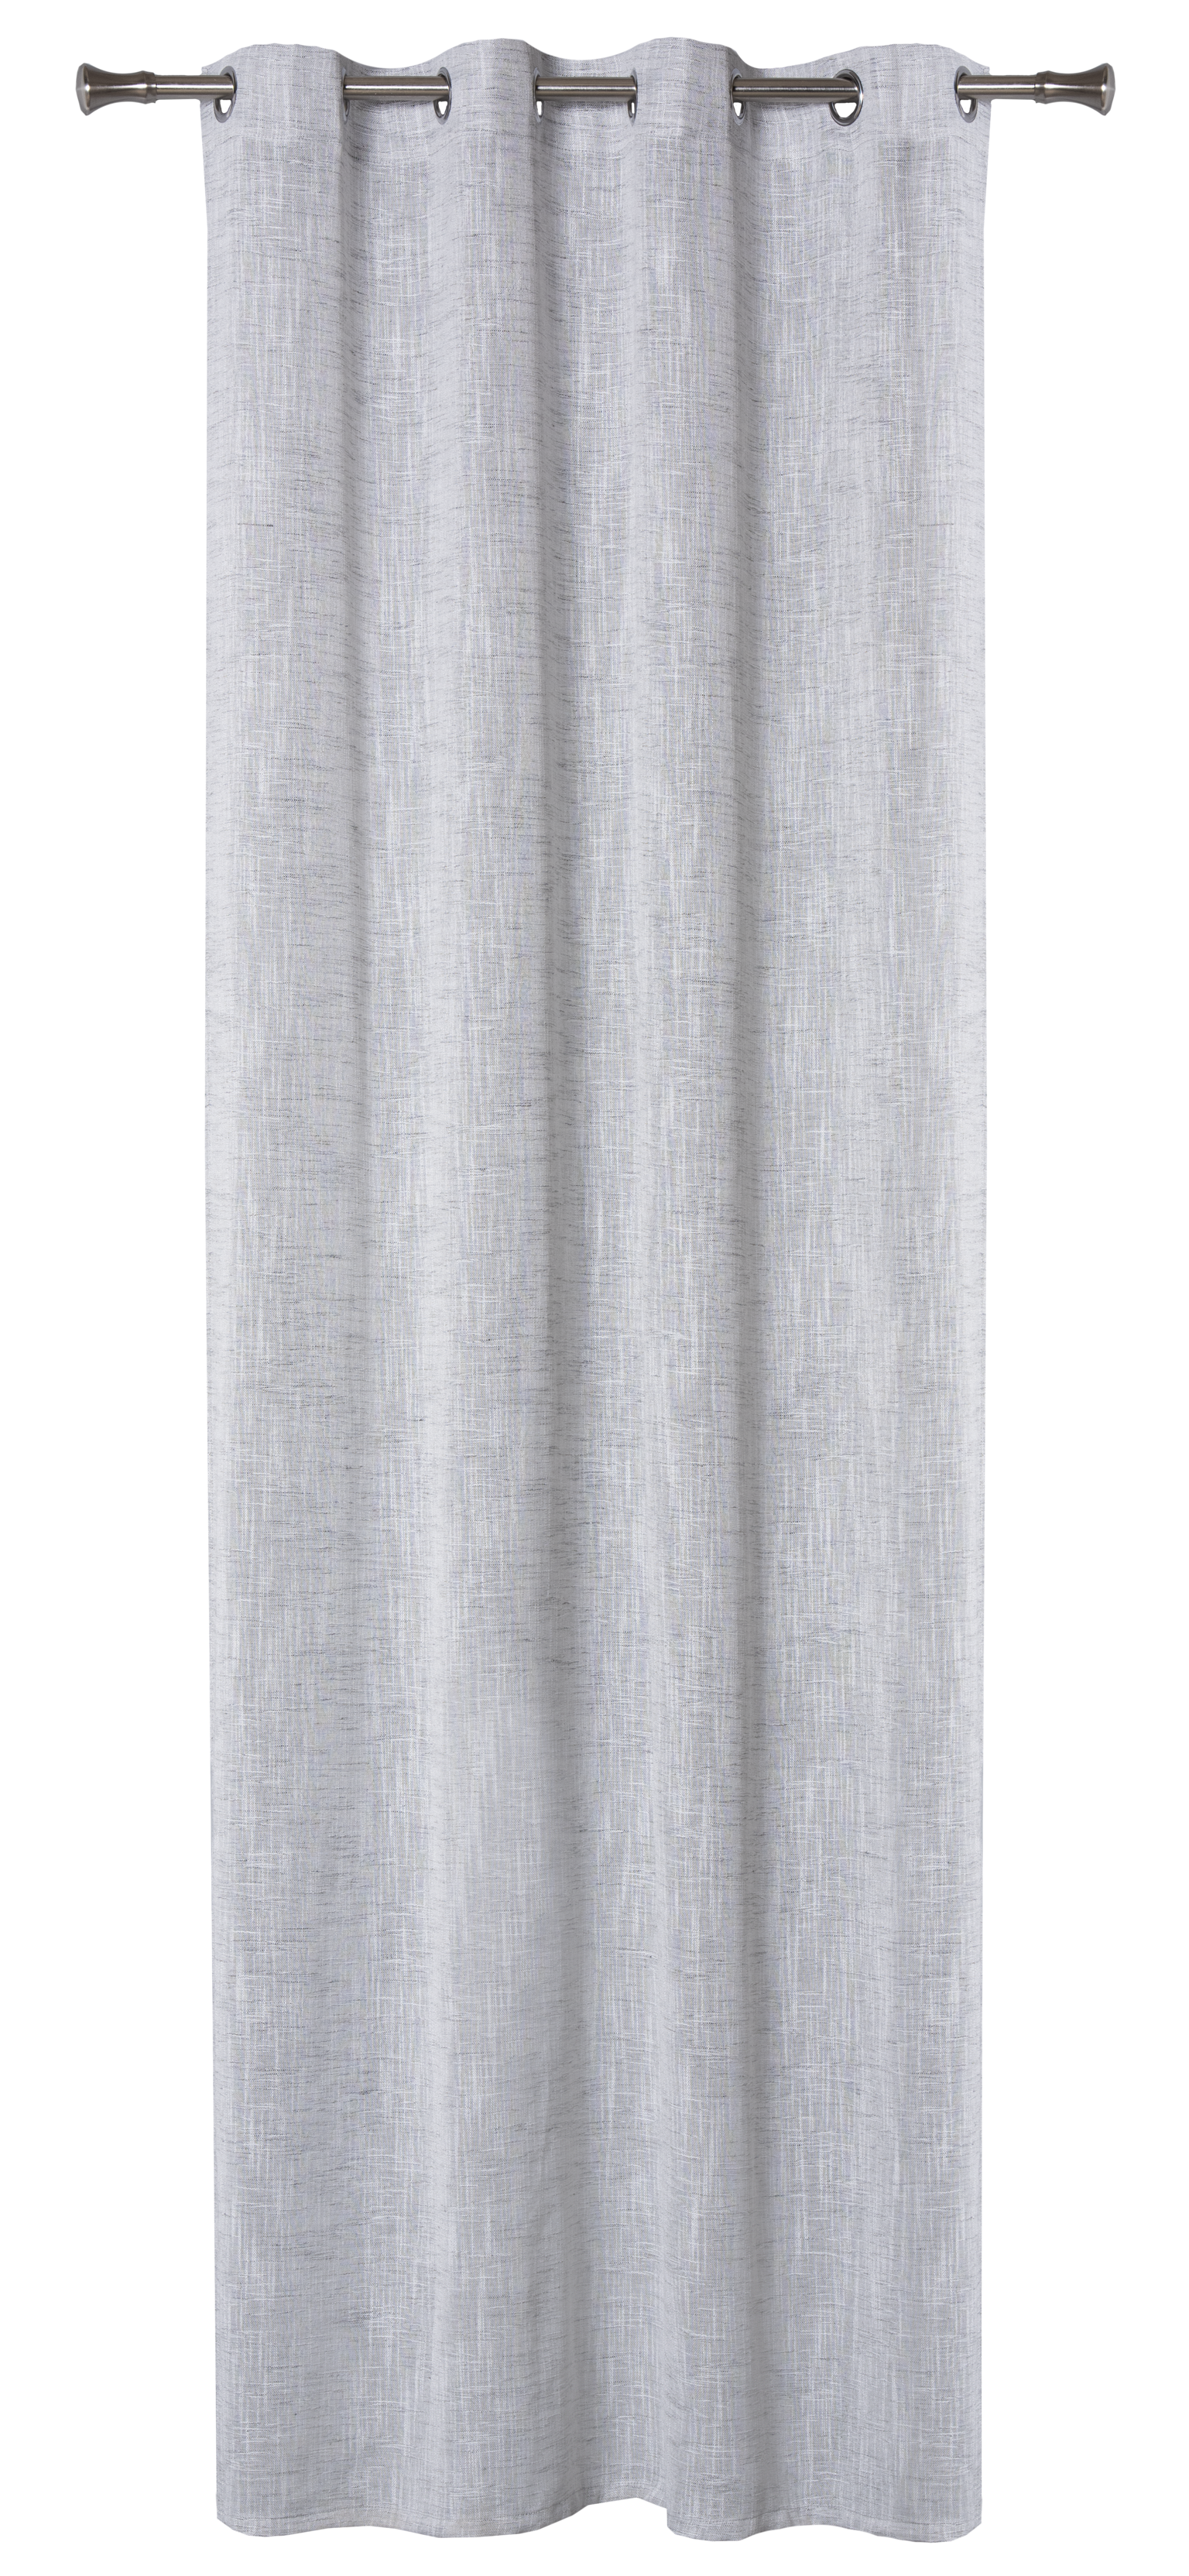 Dieninė užuolaida VIENTO, su žiedais, pilkos spalvos, 140 x 260 cm - 4